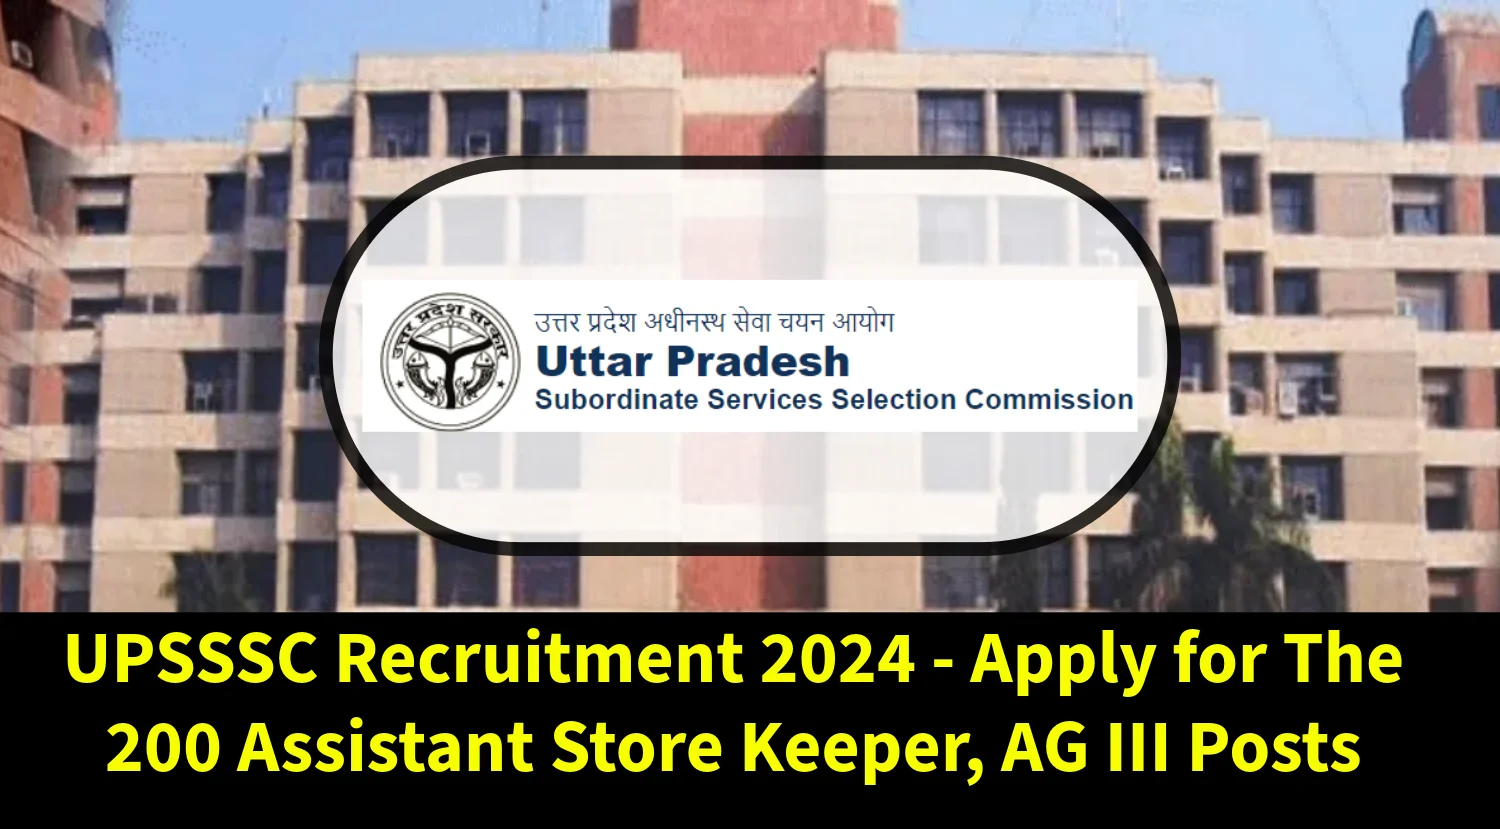 यूपीएसएसएससी भर्ती 2024 - 200 सहायक स्टोरकीपर, एजी III पदों के लिए आवेदन करें